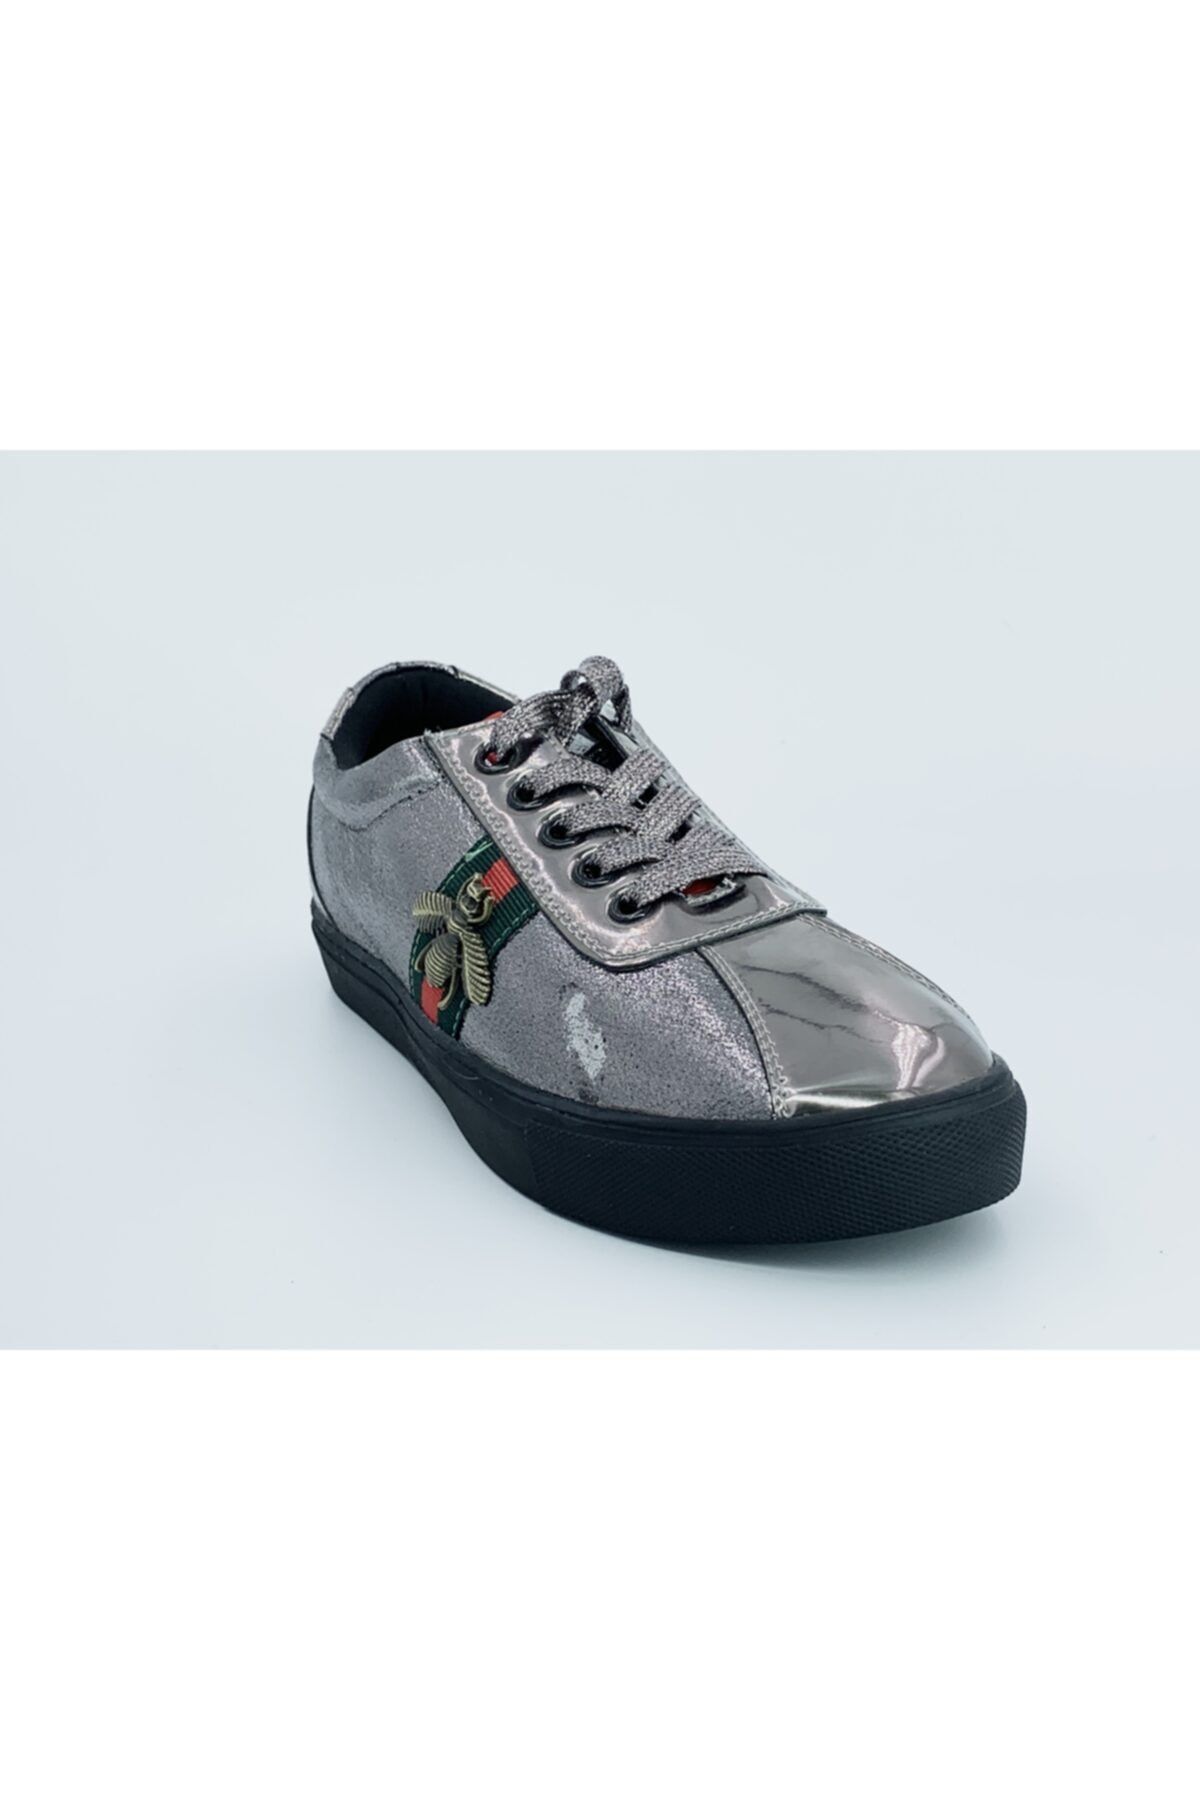 Guja Kadın Gümüş Sneaker Ayakkabı 18v421-1